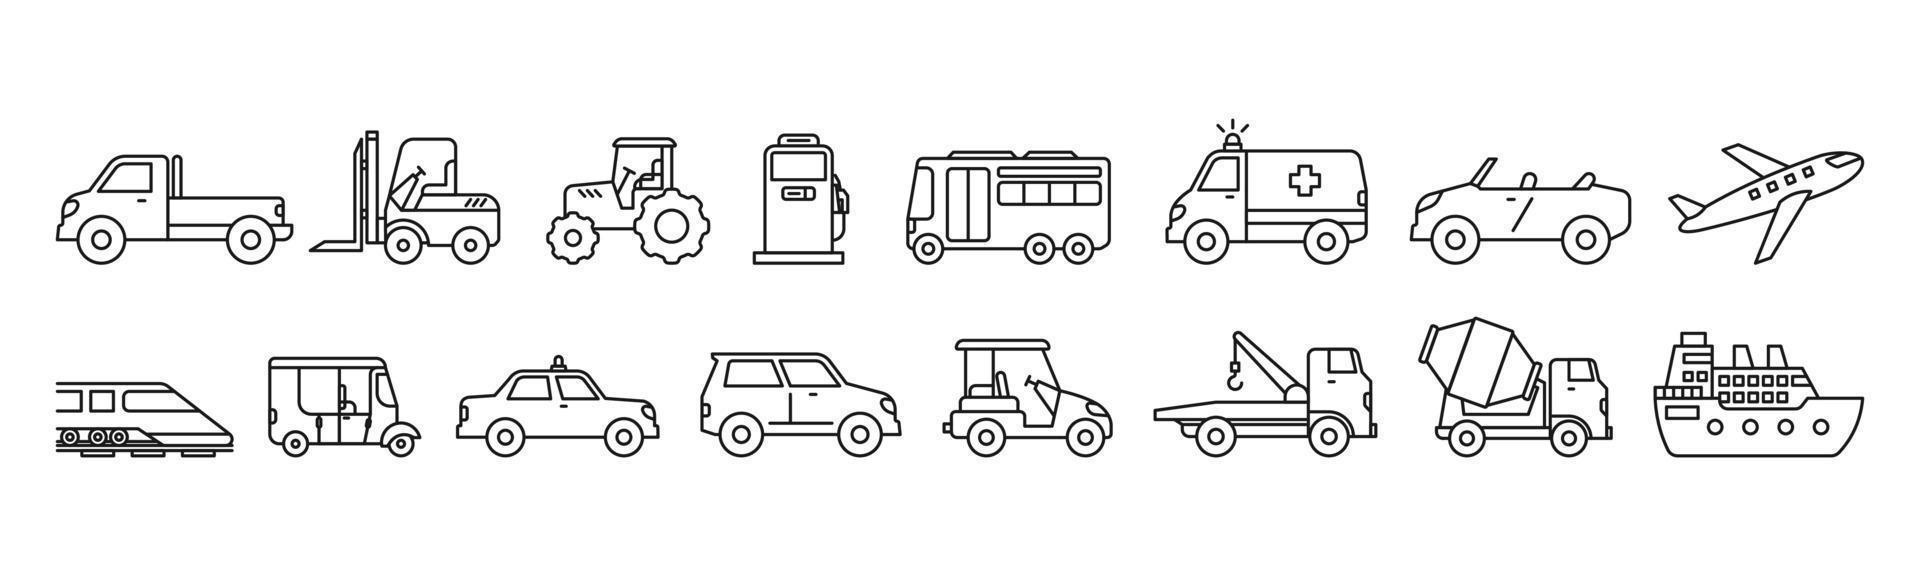 Transport line art transport icon set design template vector illustration